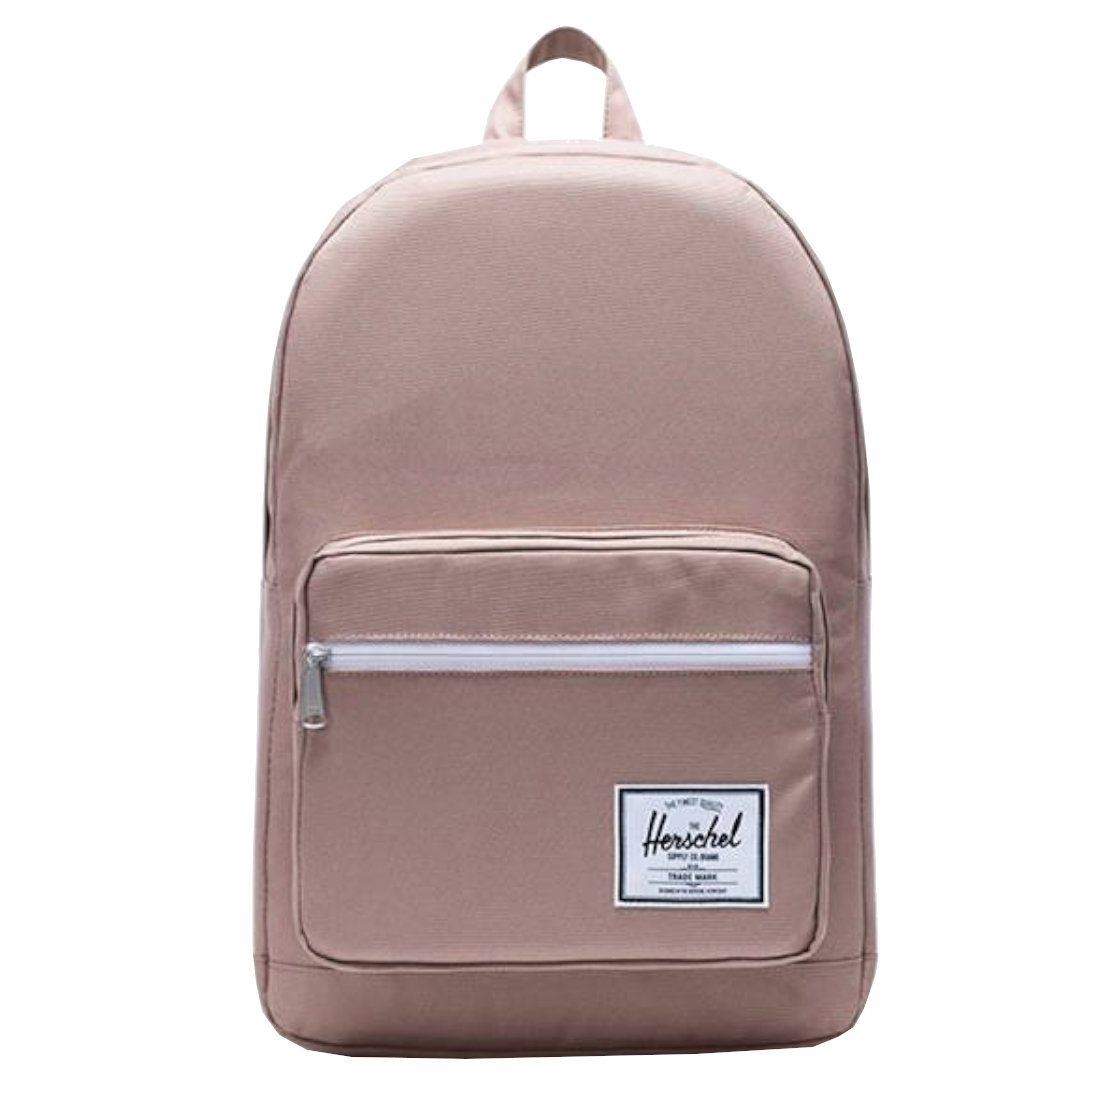 Herschel Pop Quiz Backpack 10011-02077, różowy plecak, pojemność: 22 L